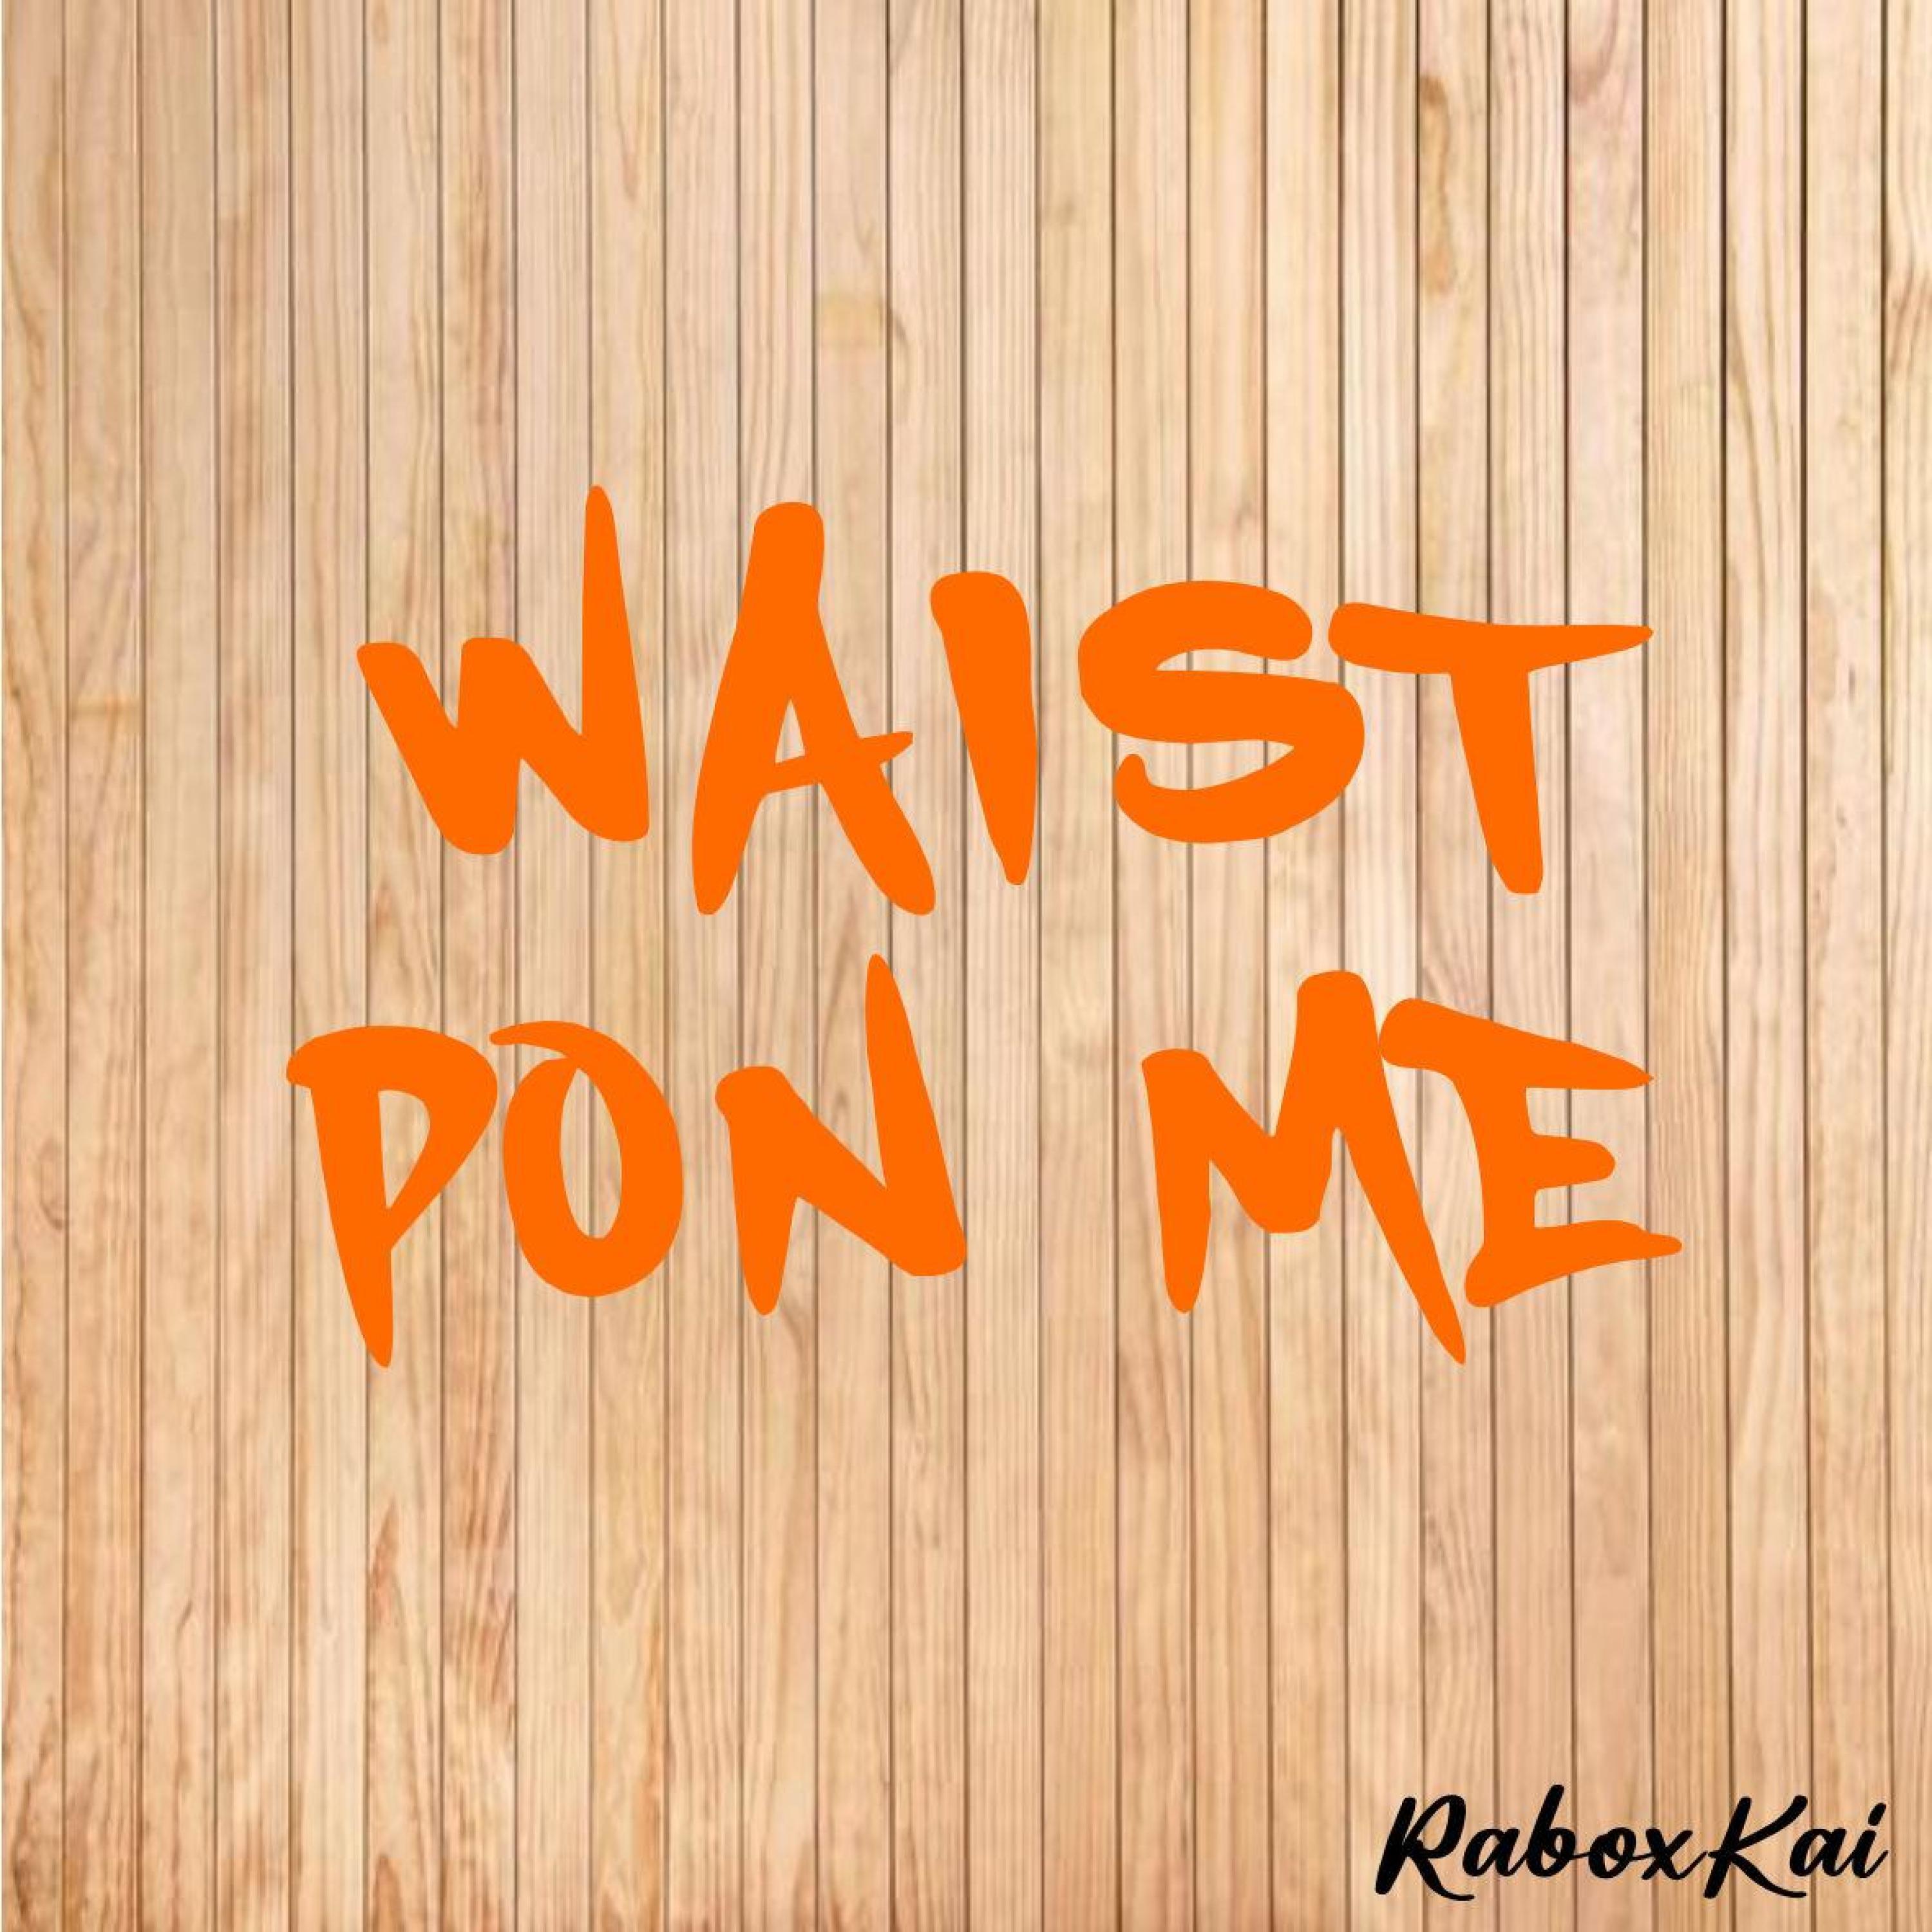 Rabo - Waist Pon Me